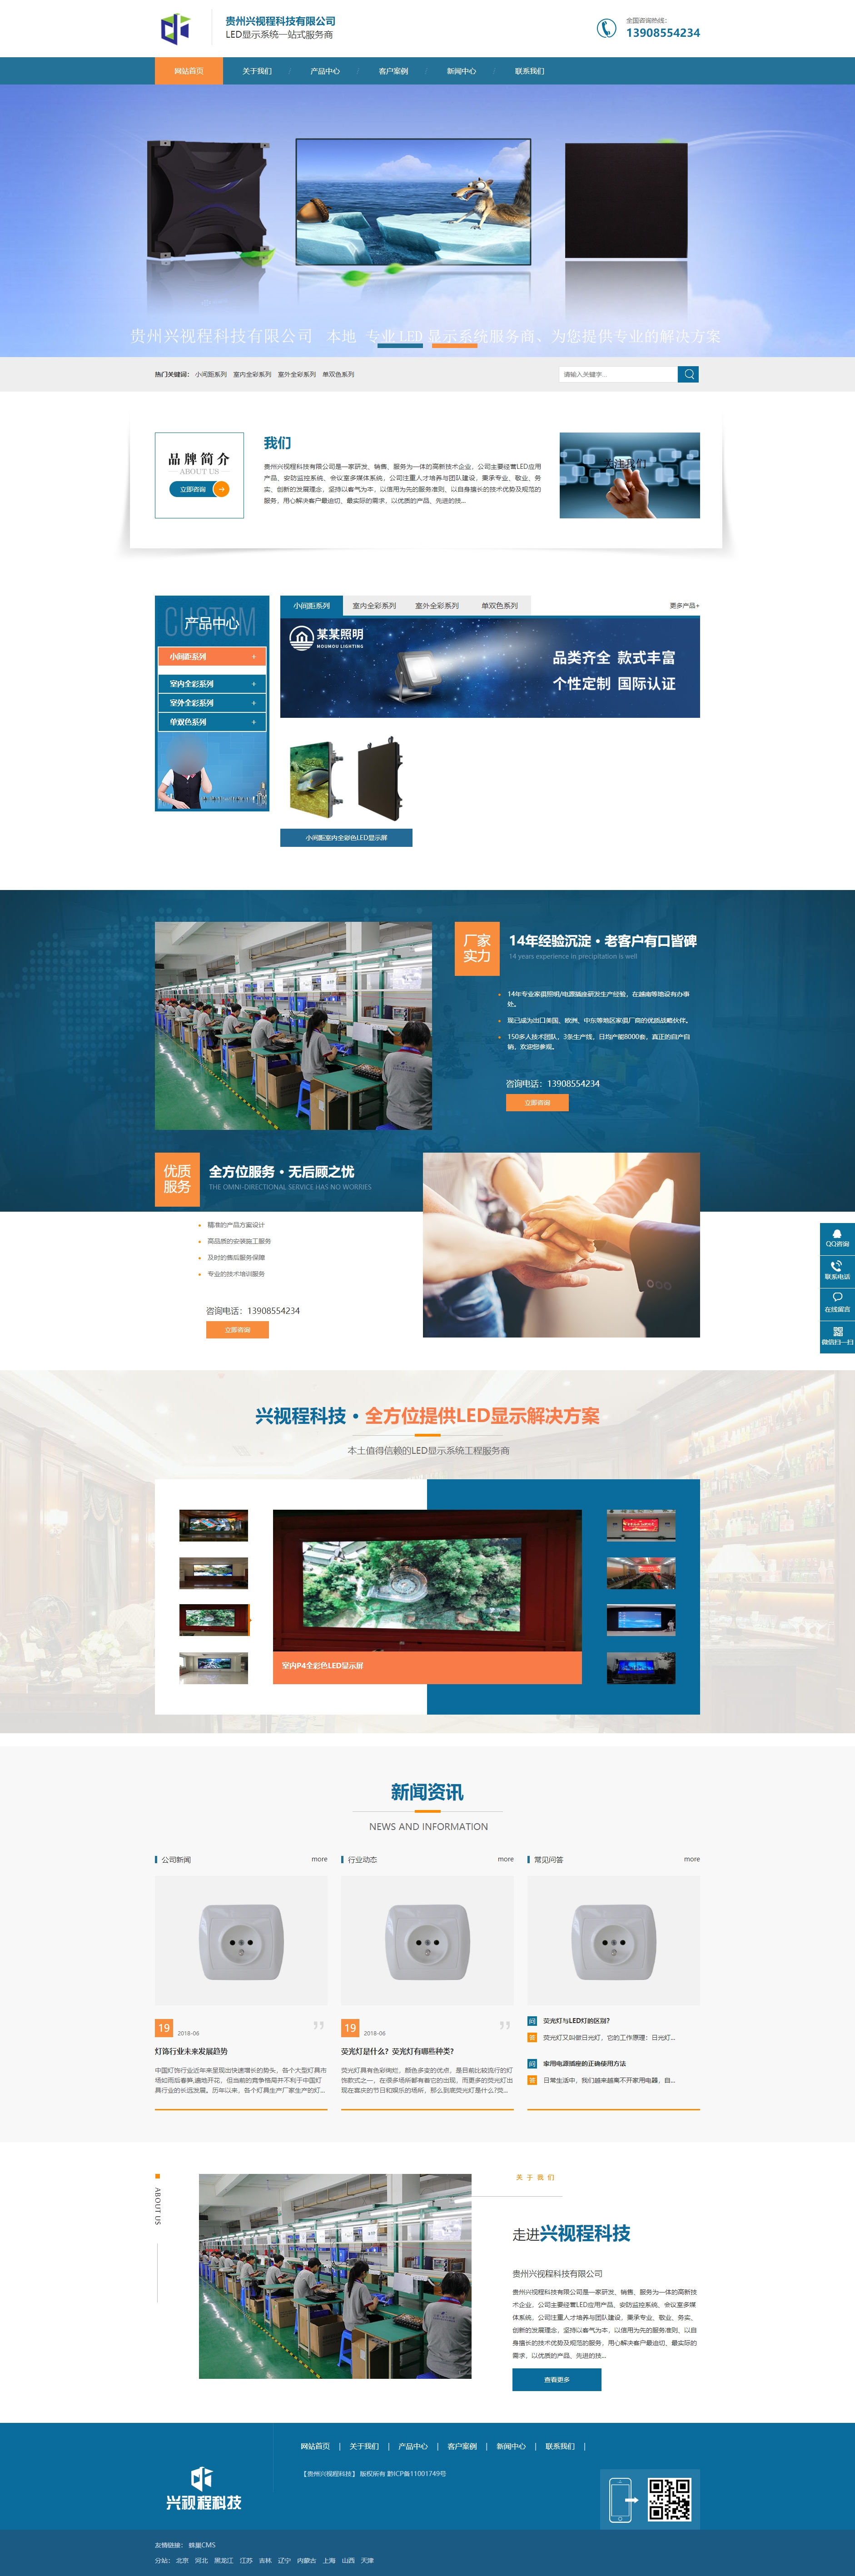 织金贵州兴视程科技有限公司 网站正式上线